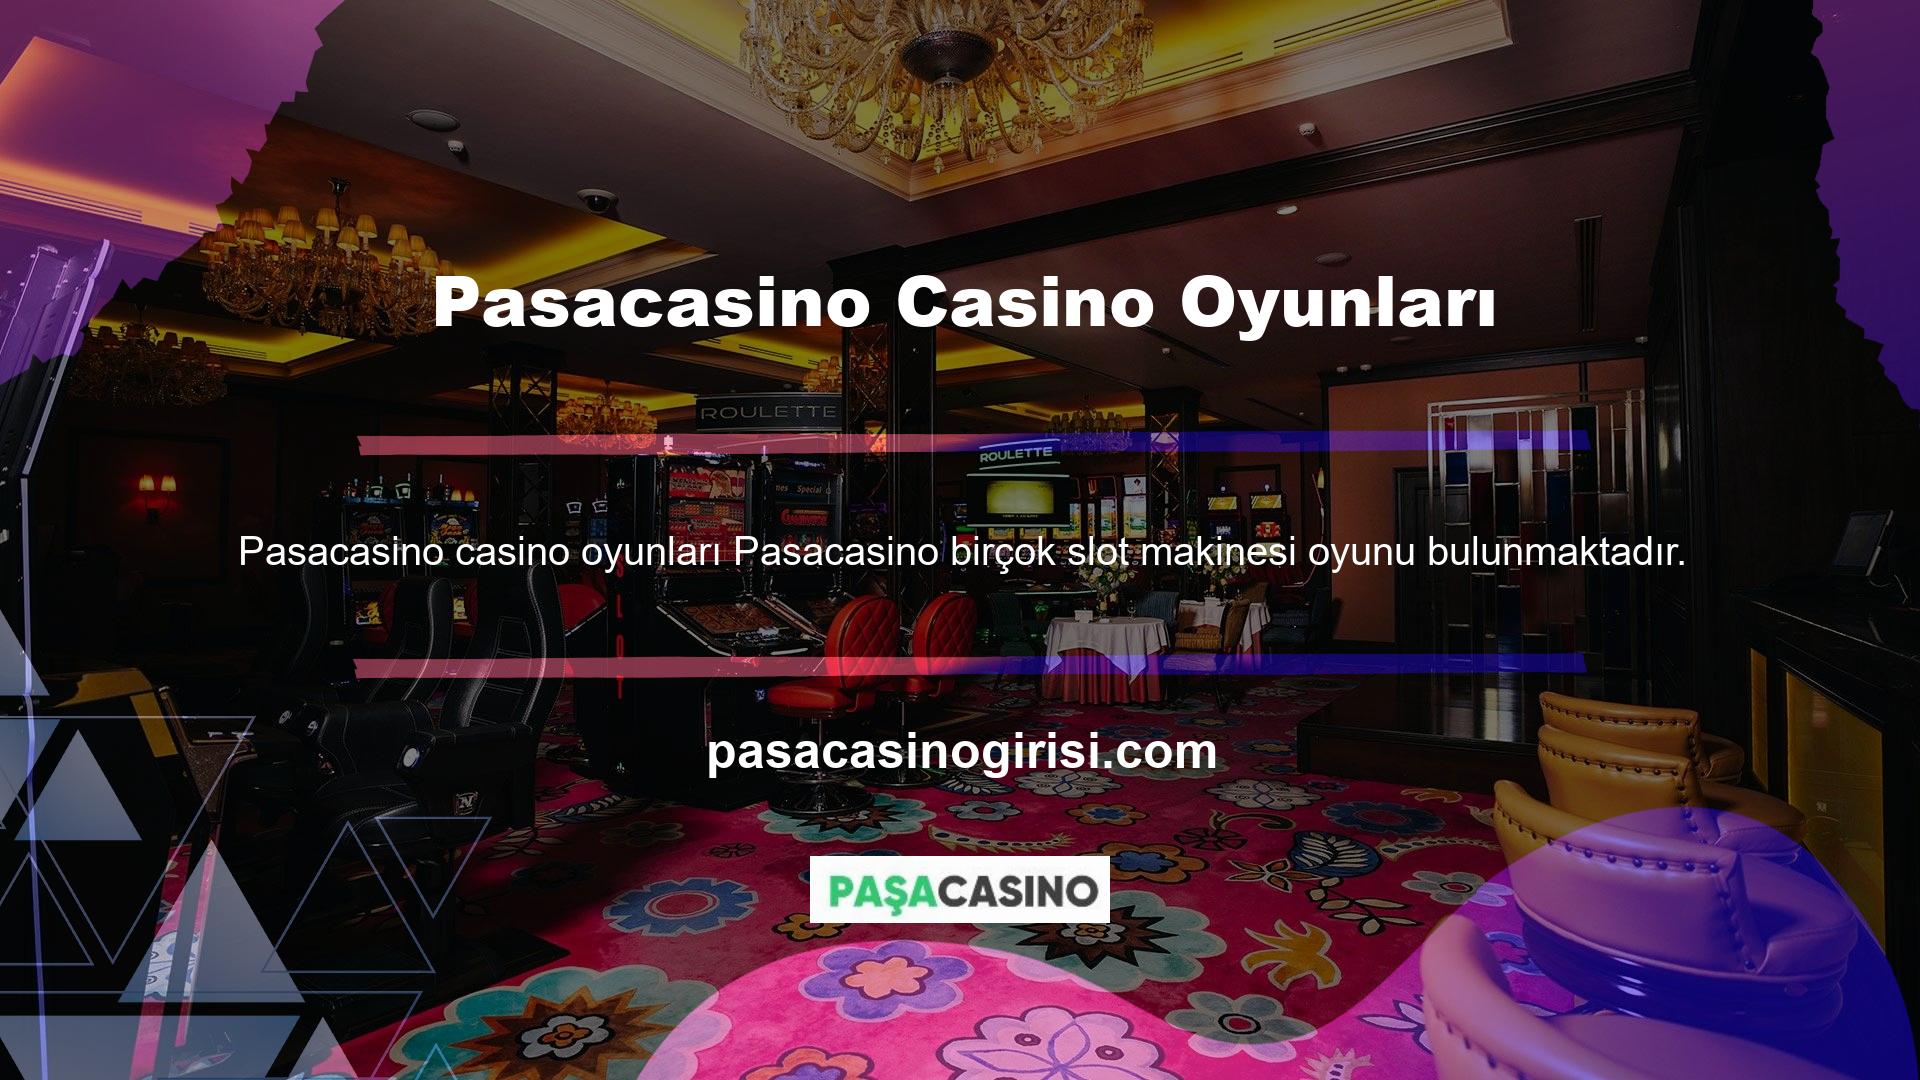 Dünyadaki hemen hemen tüm oyun sağlayıcılar Pasacasino ile casino oyunları üretmektedir